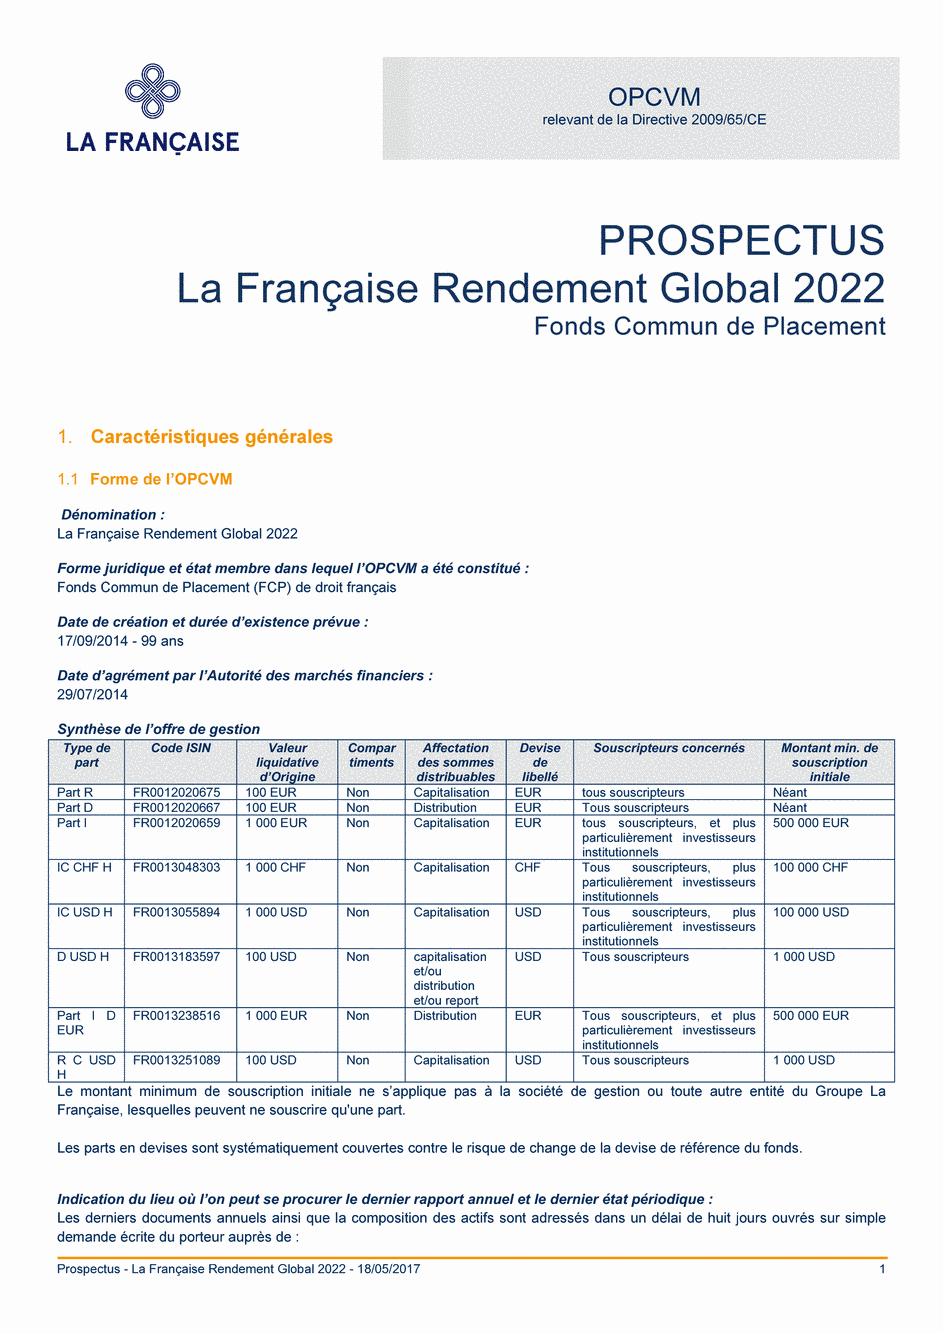 Prospectus La Française Rendement Global 2022 - R C USD H - 18/05/2017 - Français